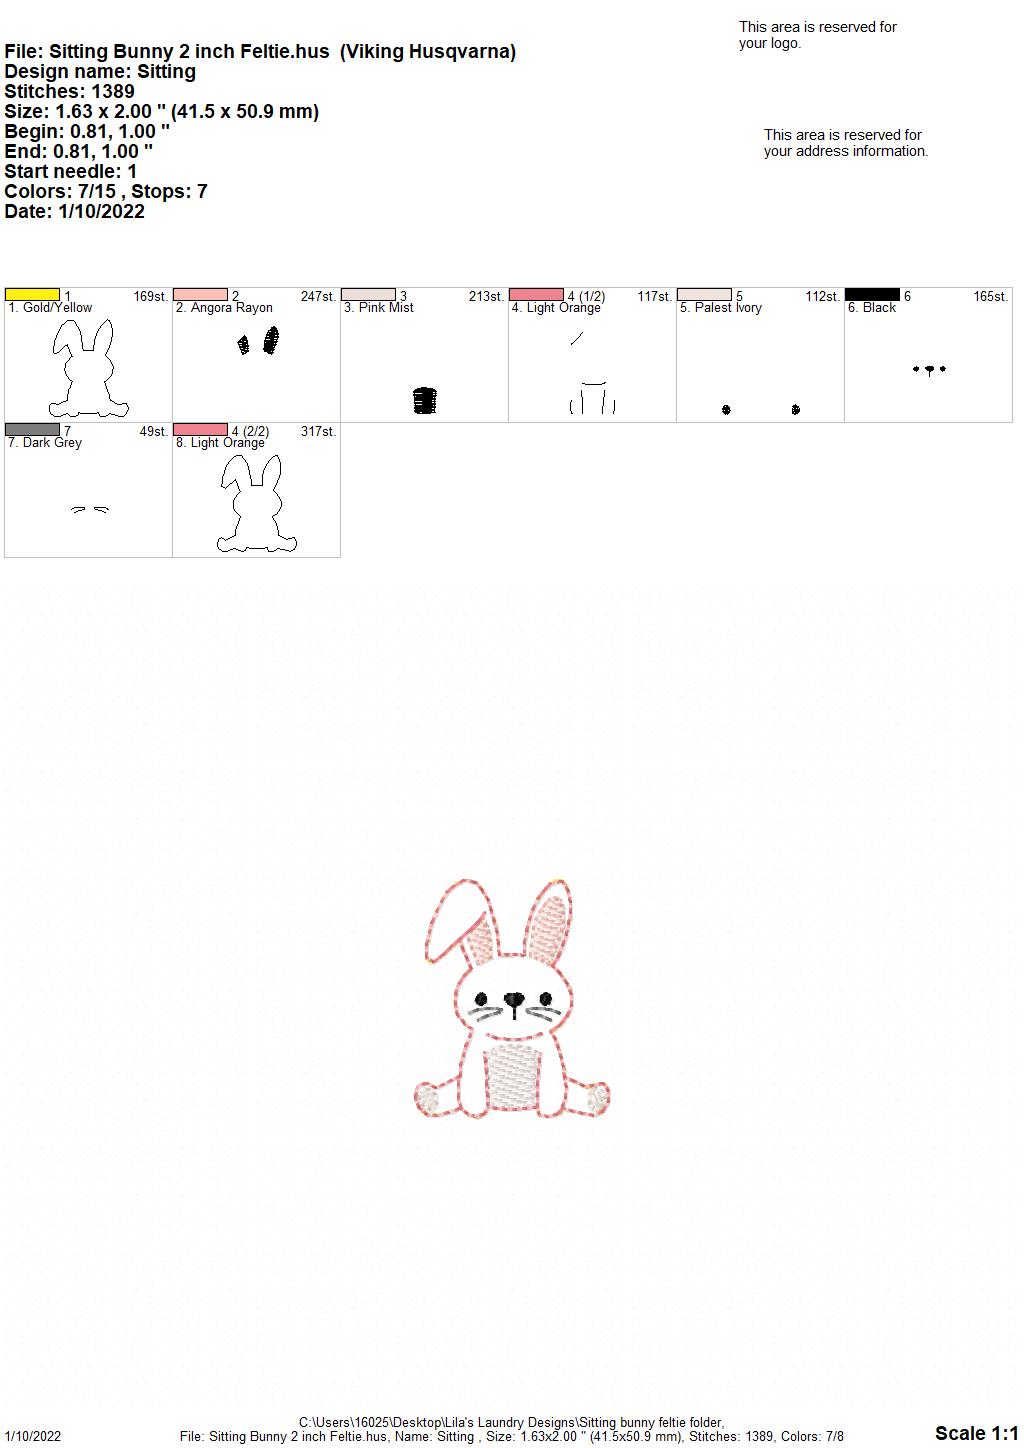 Sitting Bunny Feltie - Digital Embroidery Design